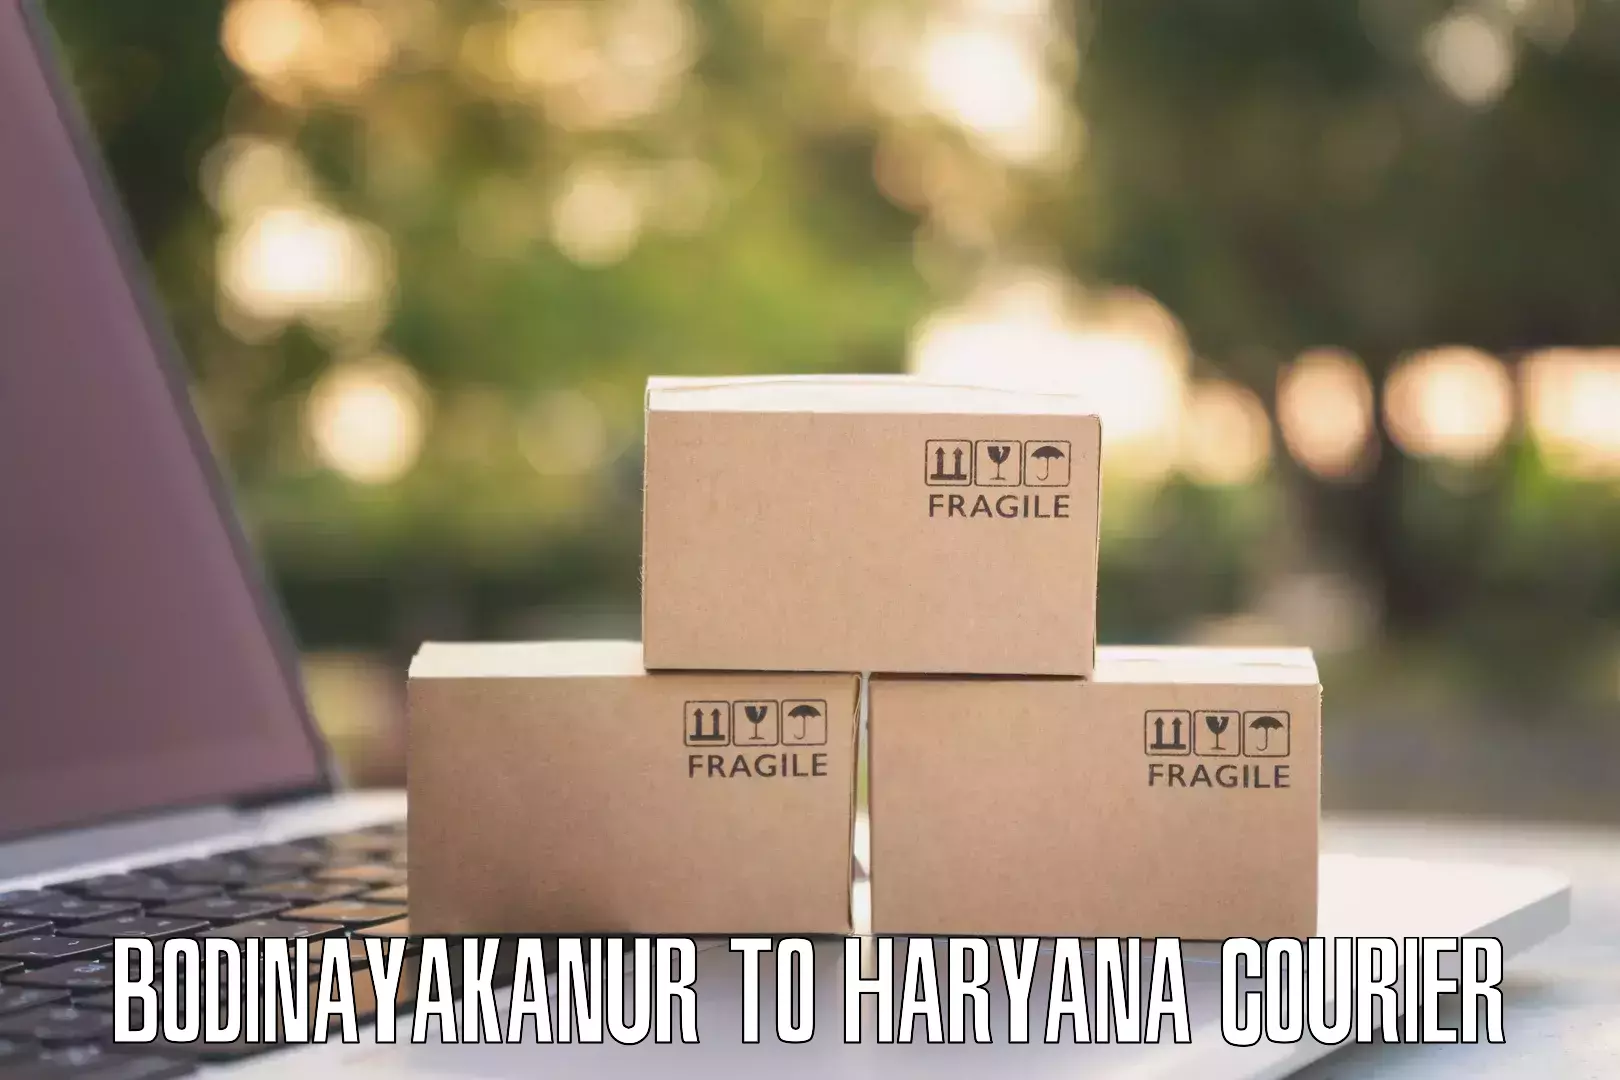 Supply chain delivery Bodinayakanur to Haryana